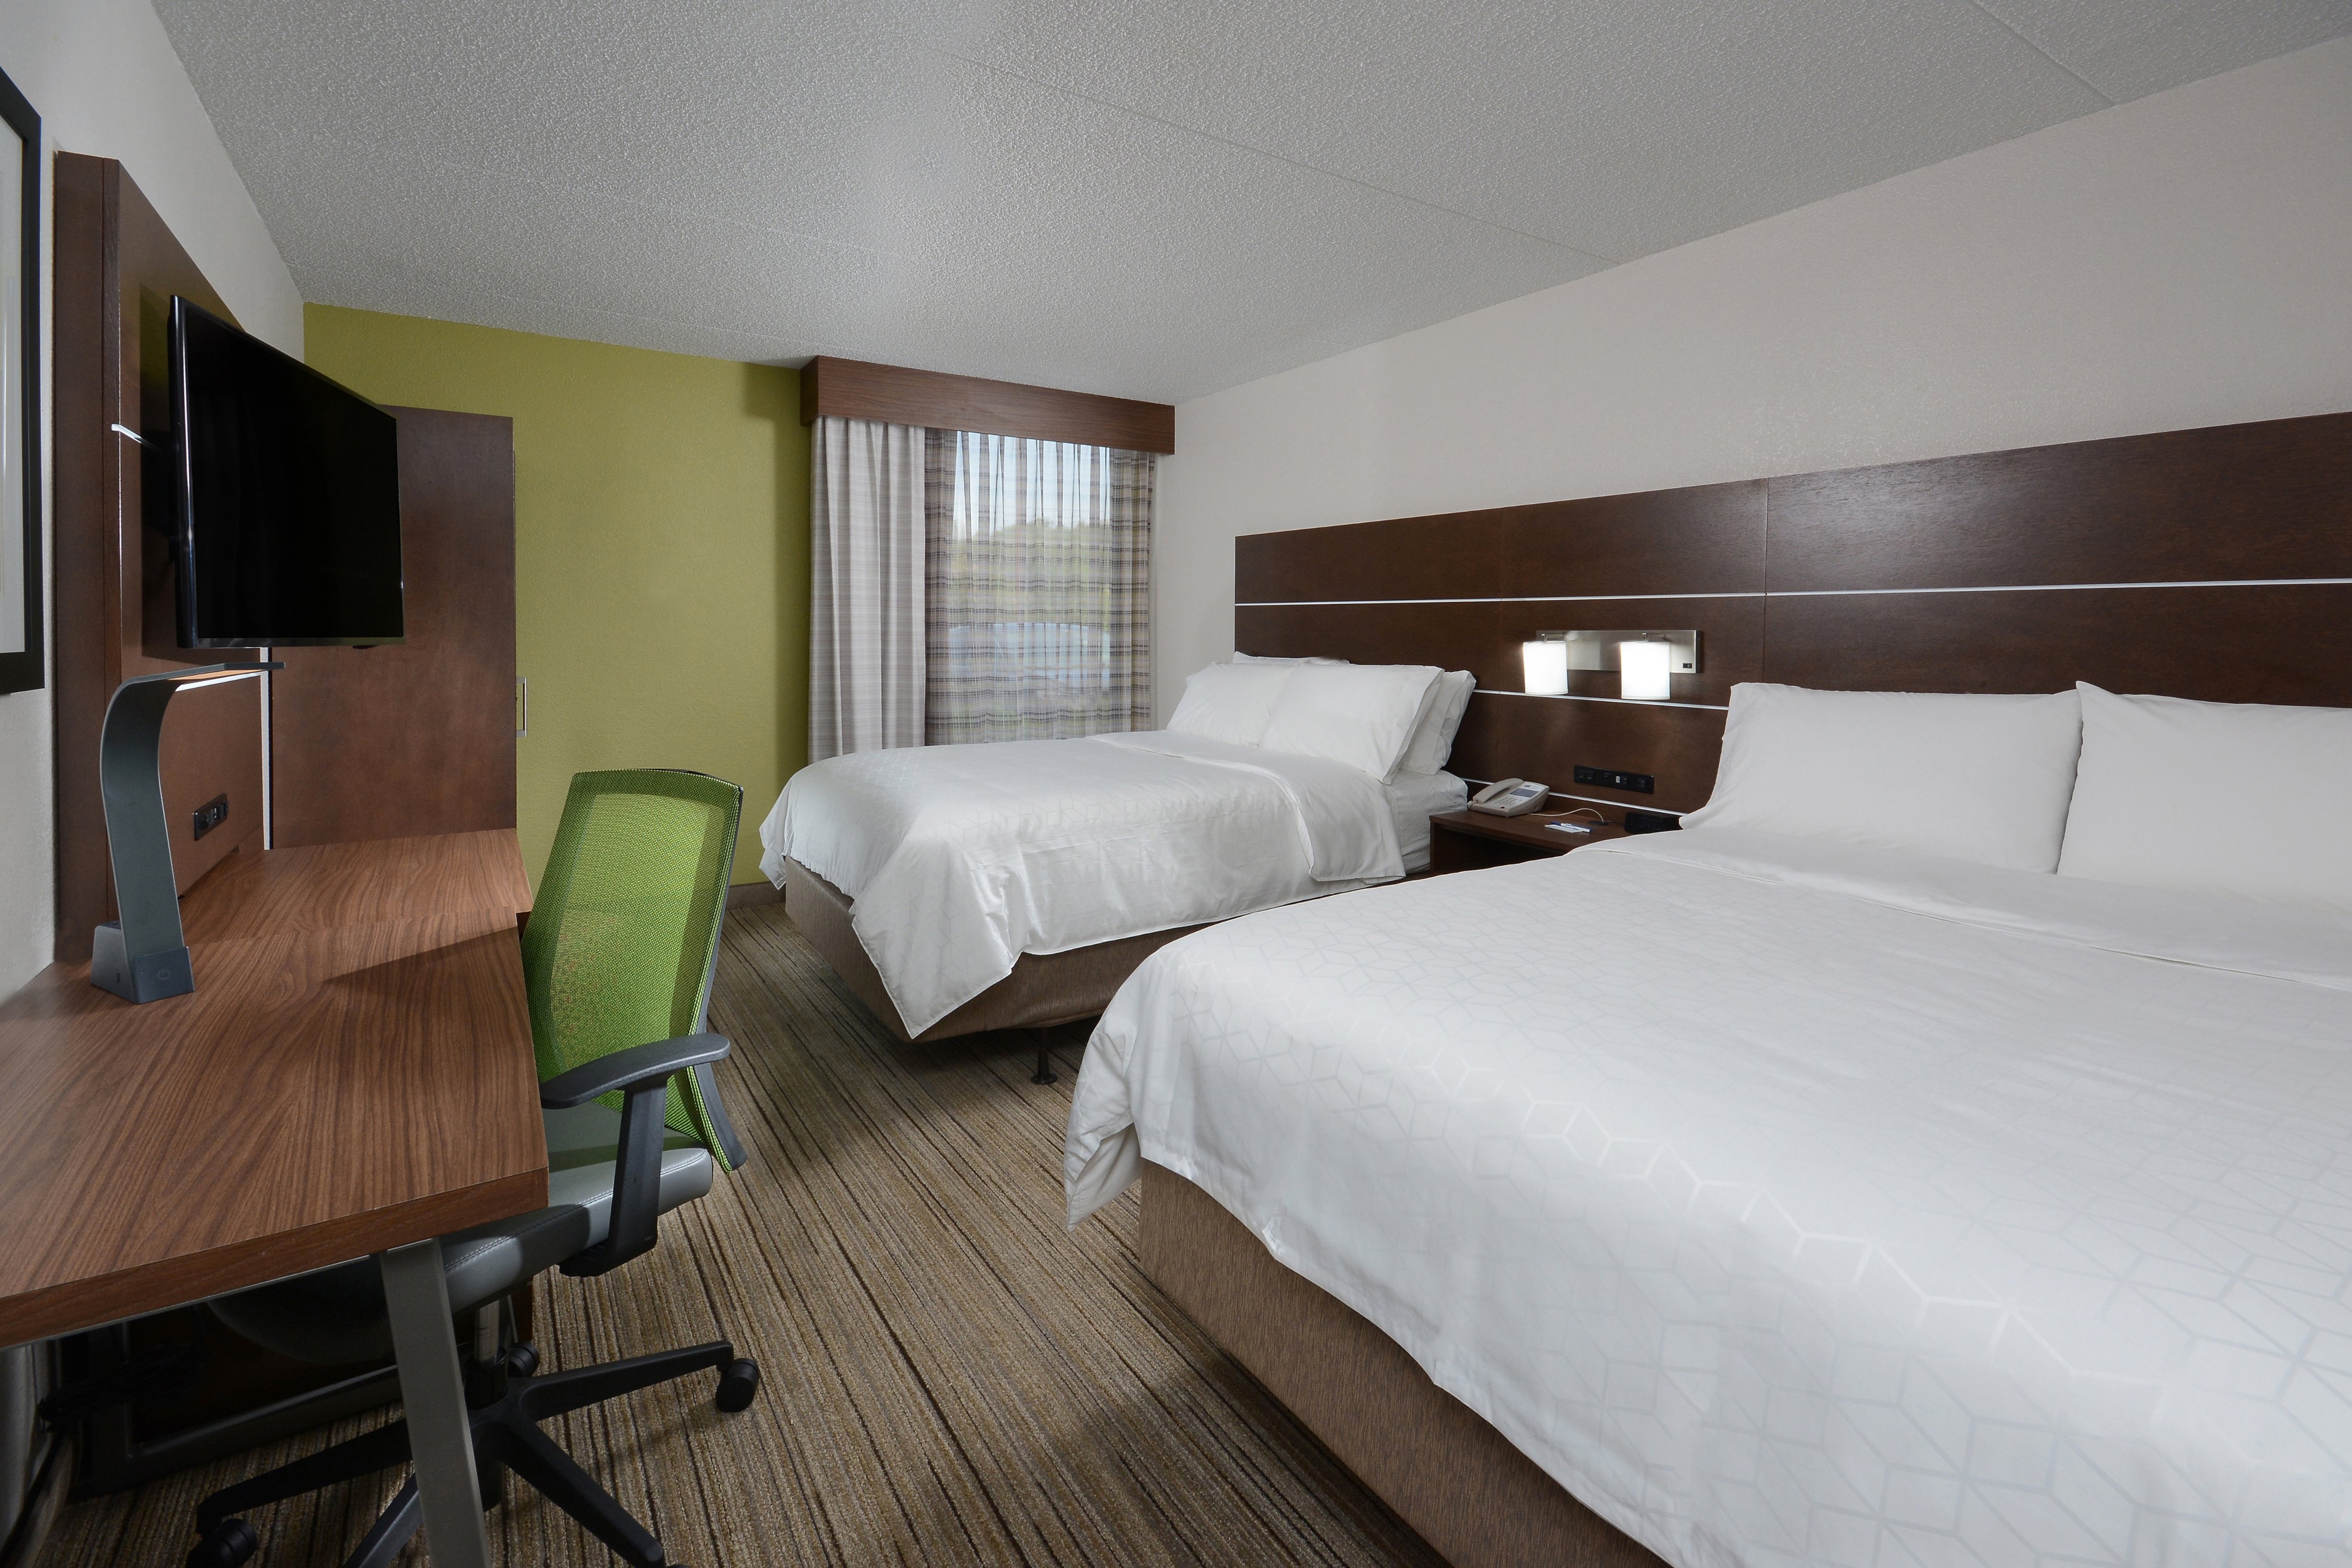 Our Danville, VA hotel queen rooms comfortable sleep four.